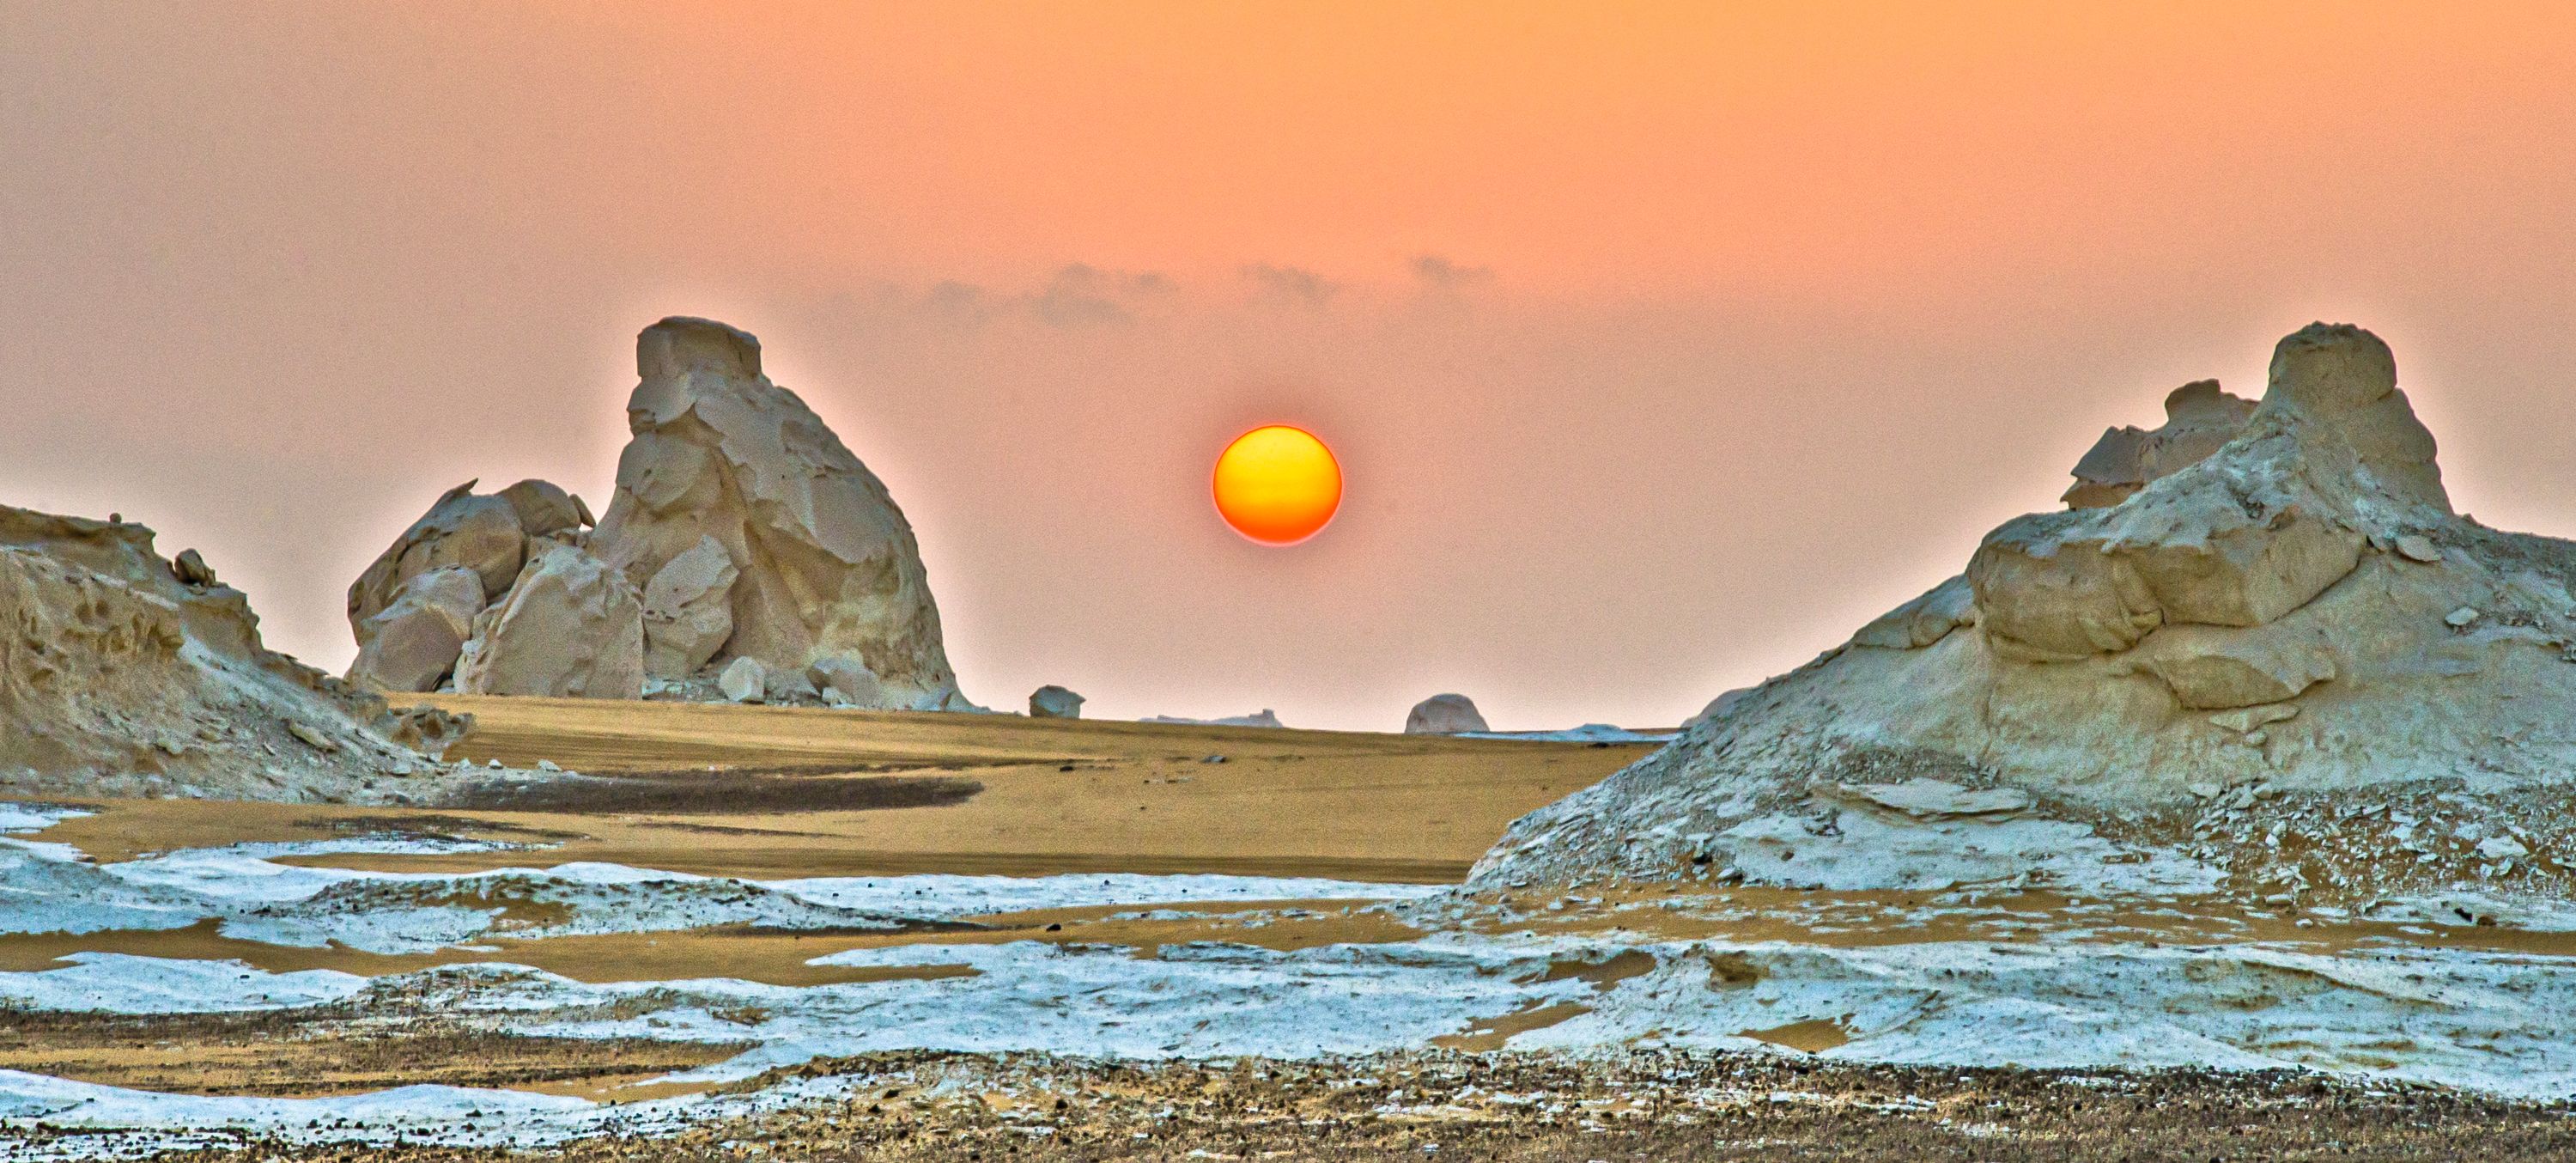 Sunrise, White Desert, Egypt